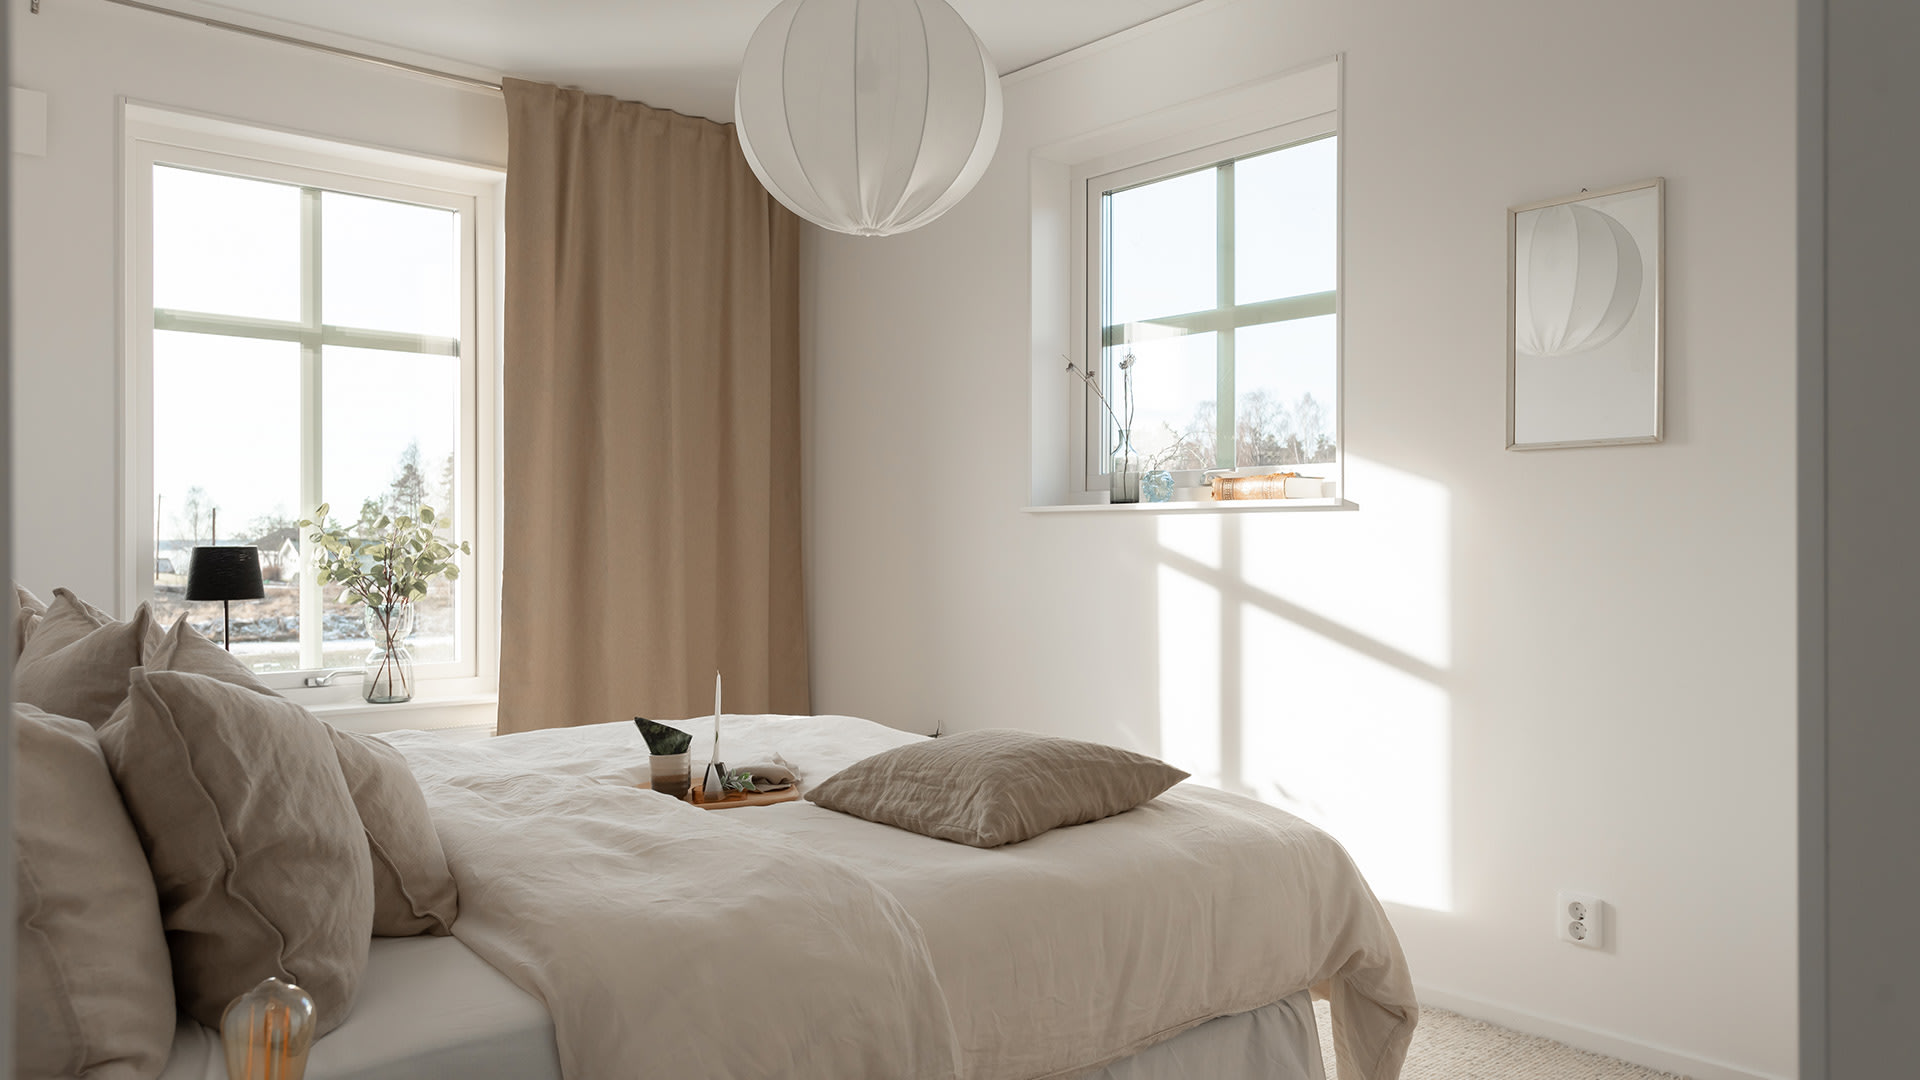 Bild: Sovrum i beige med dubbelsäng och fint ljusinsläpp från fönster.